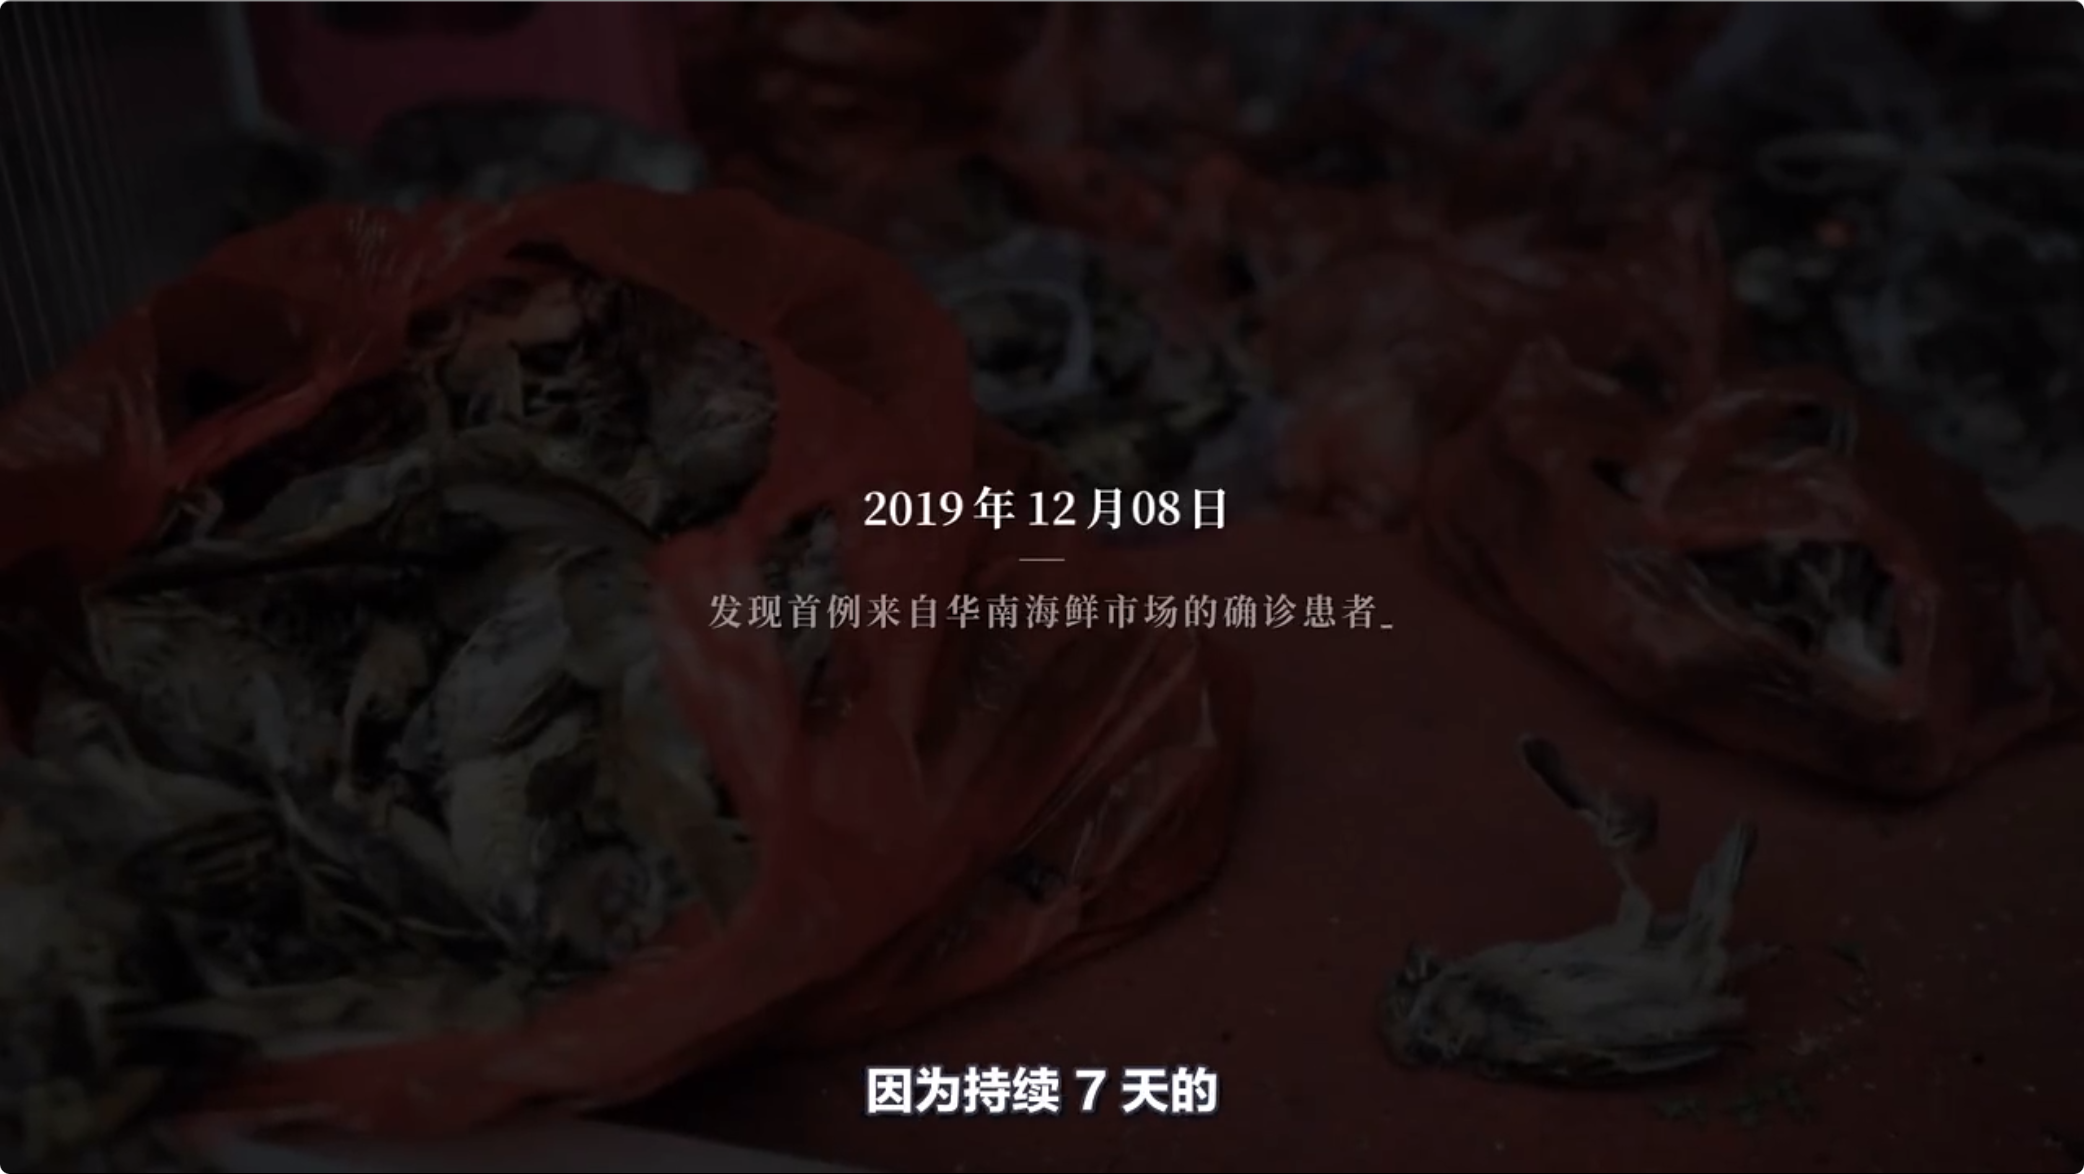 2019 年 12 月 8 日，发现首例来自华南海鲜市场的确诊患者